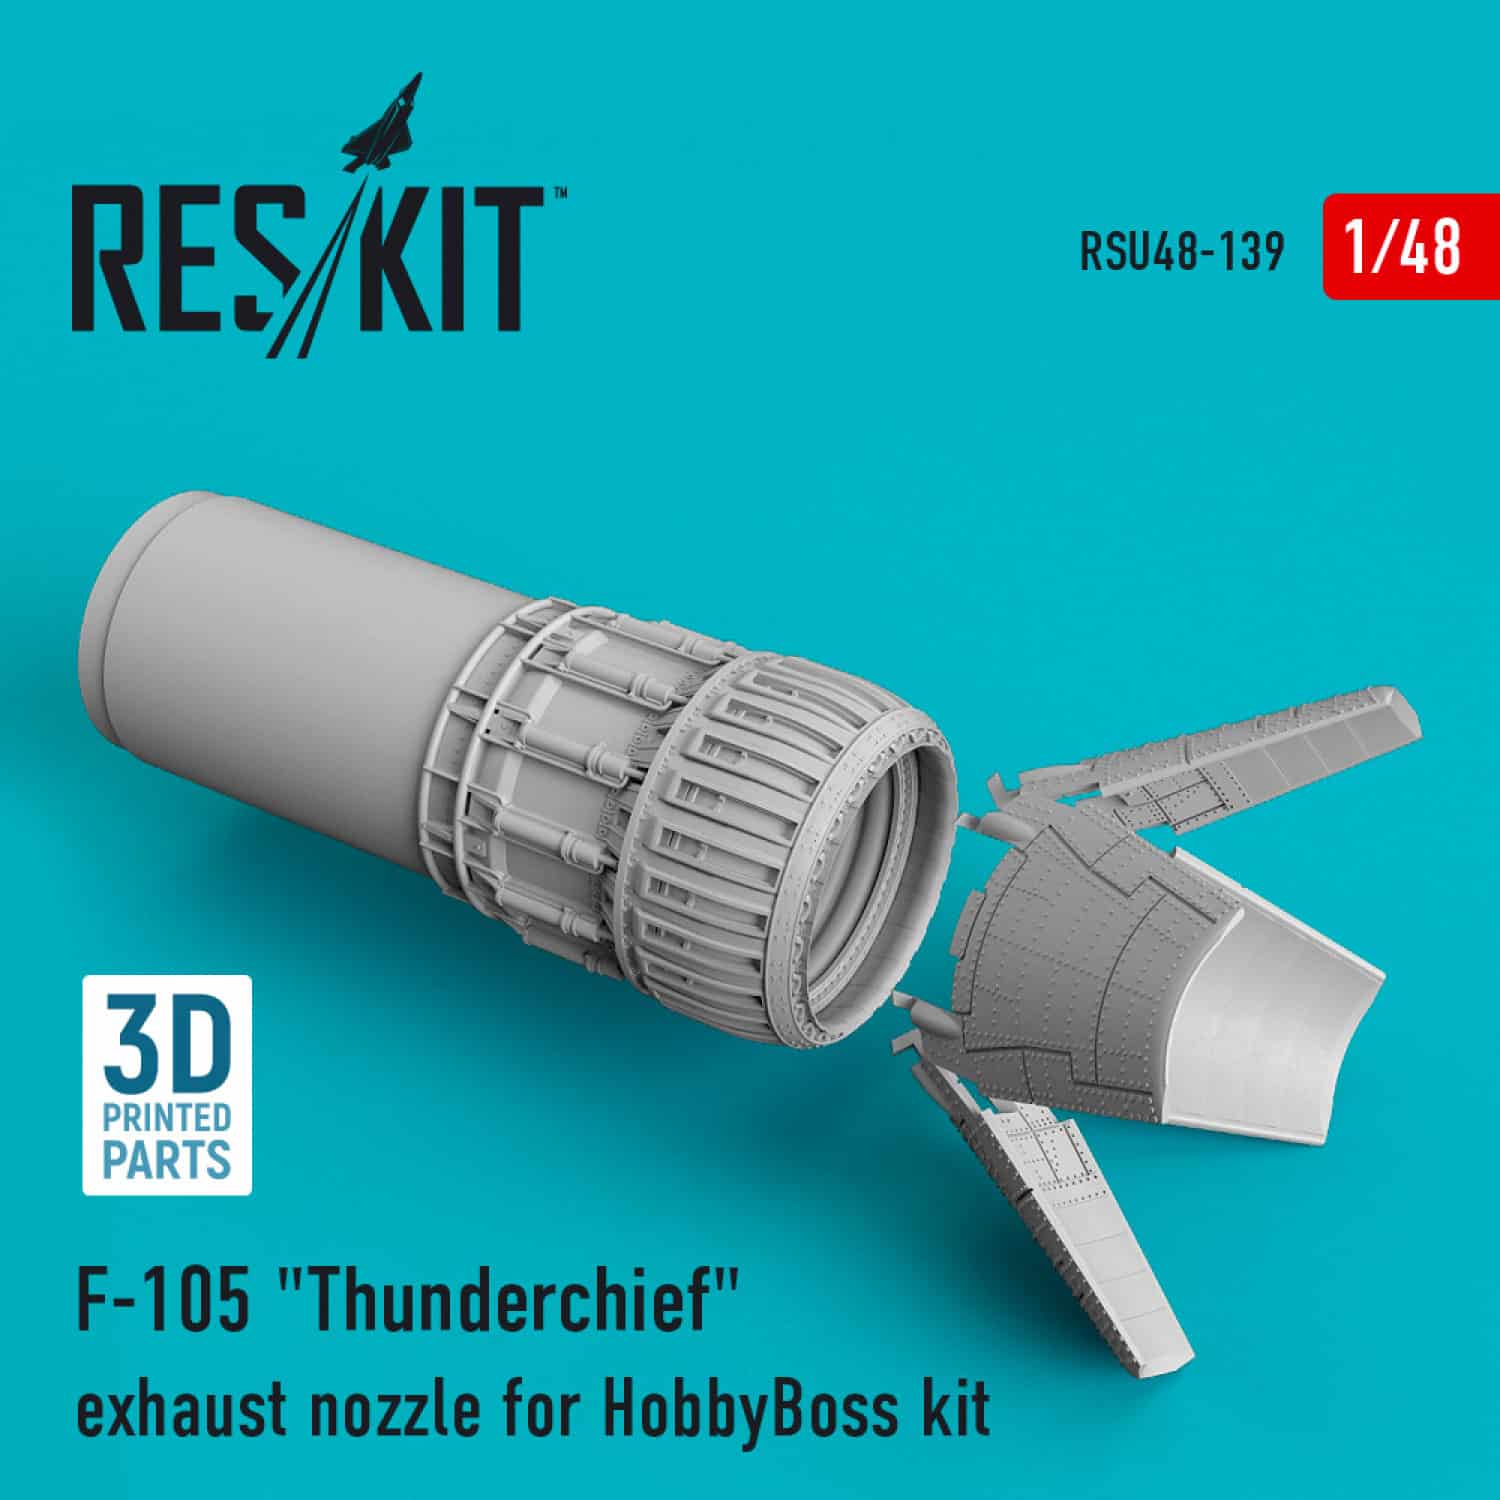 Reskit 148 F-105 Thunderchief exhaust nozzle for HobbyBoss kit